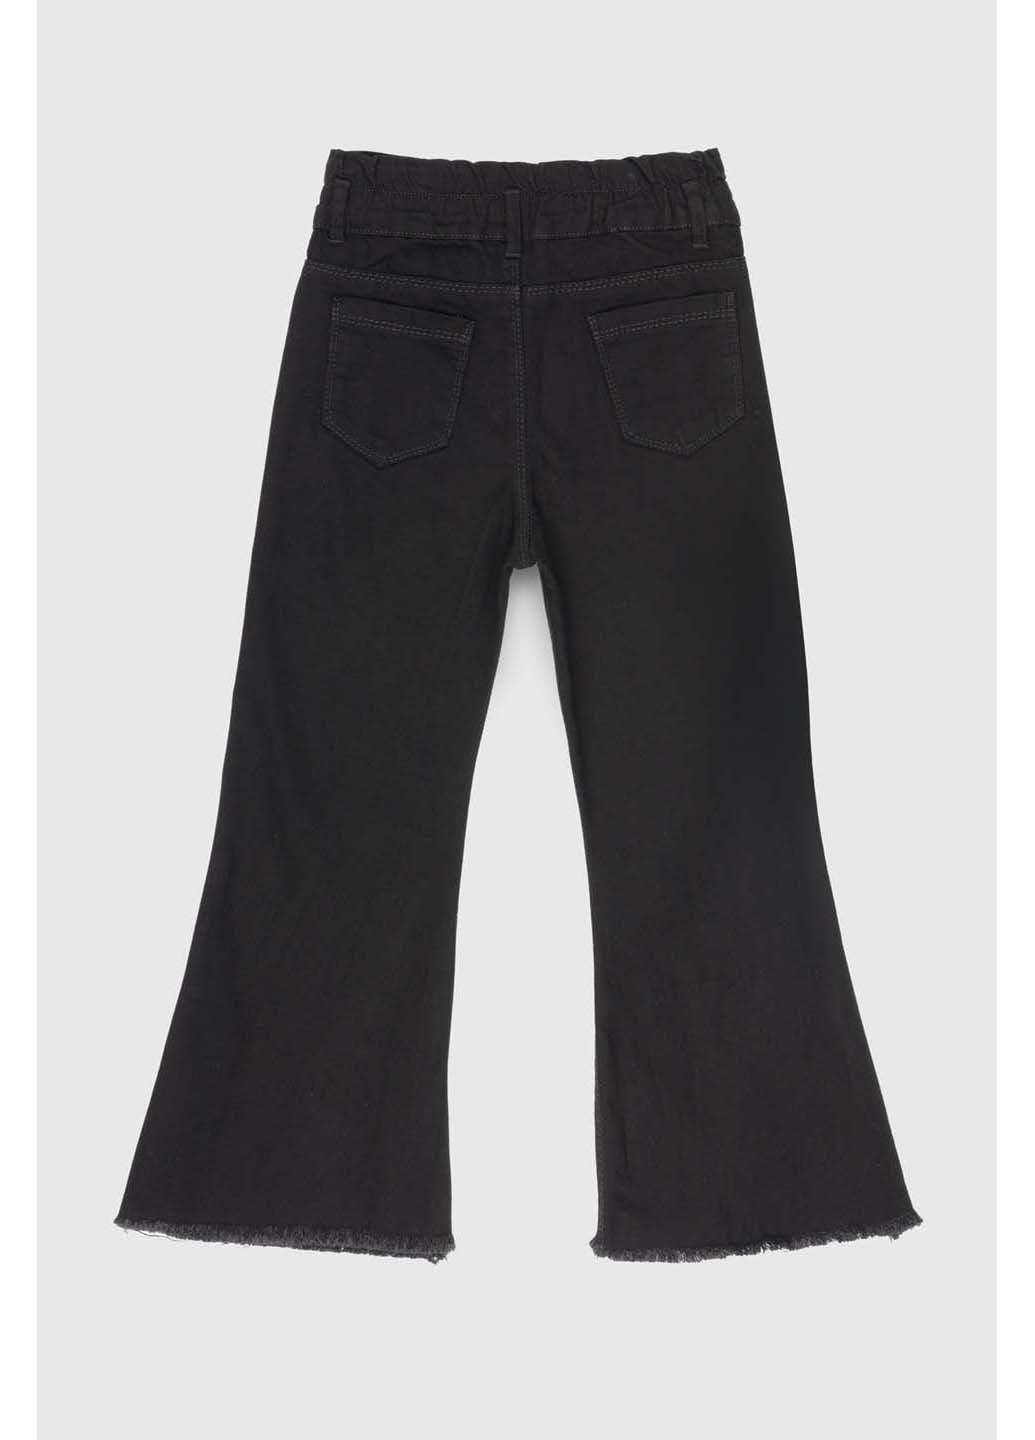 Черные демисезонные джинсы Pitiki